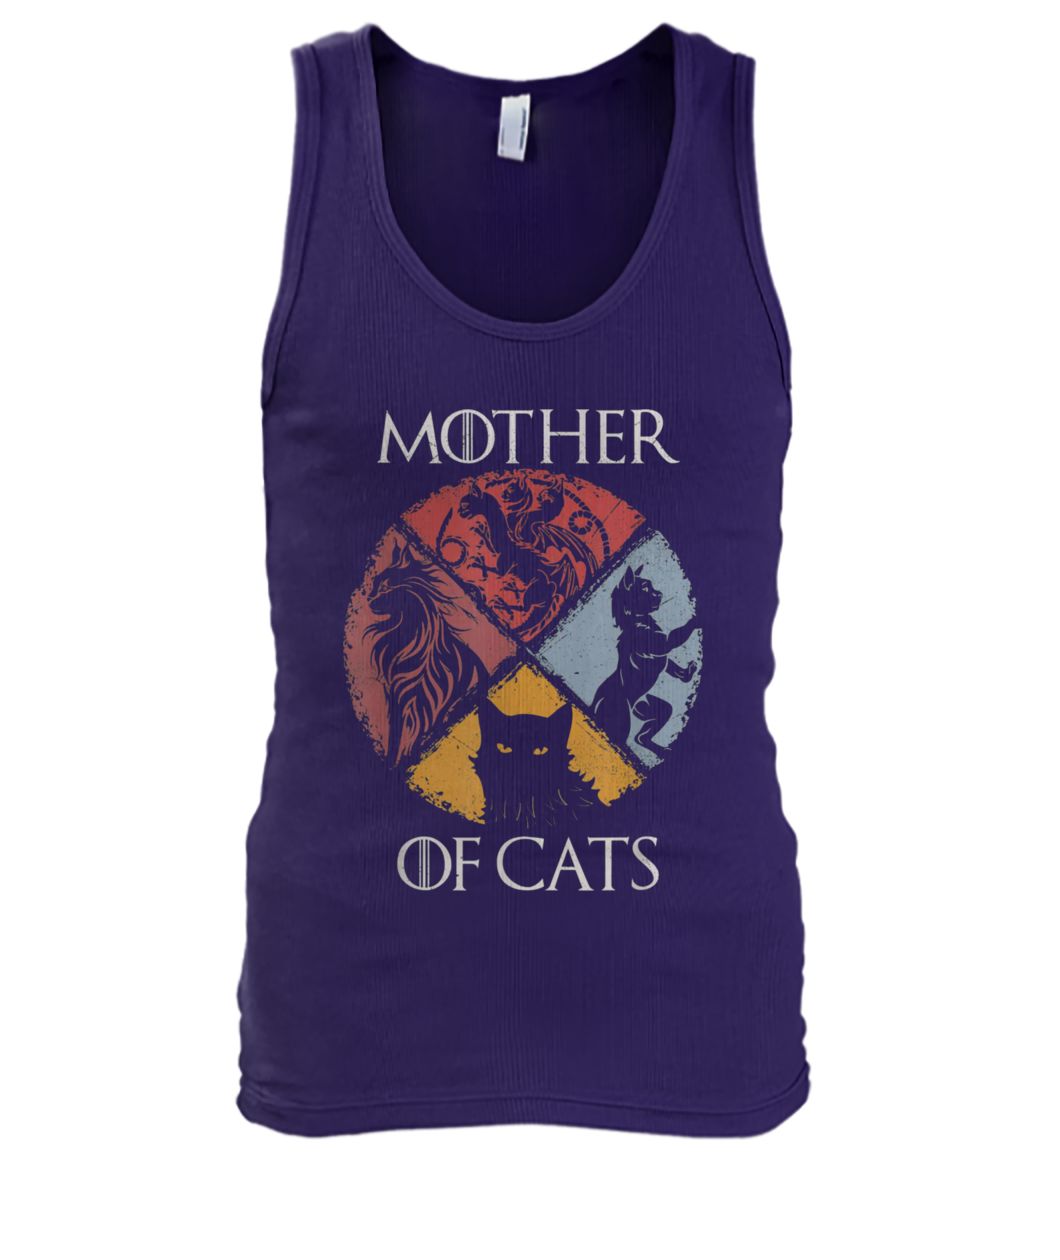 Mother of cats game of thrones men's tank top